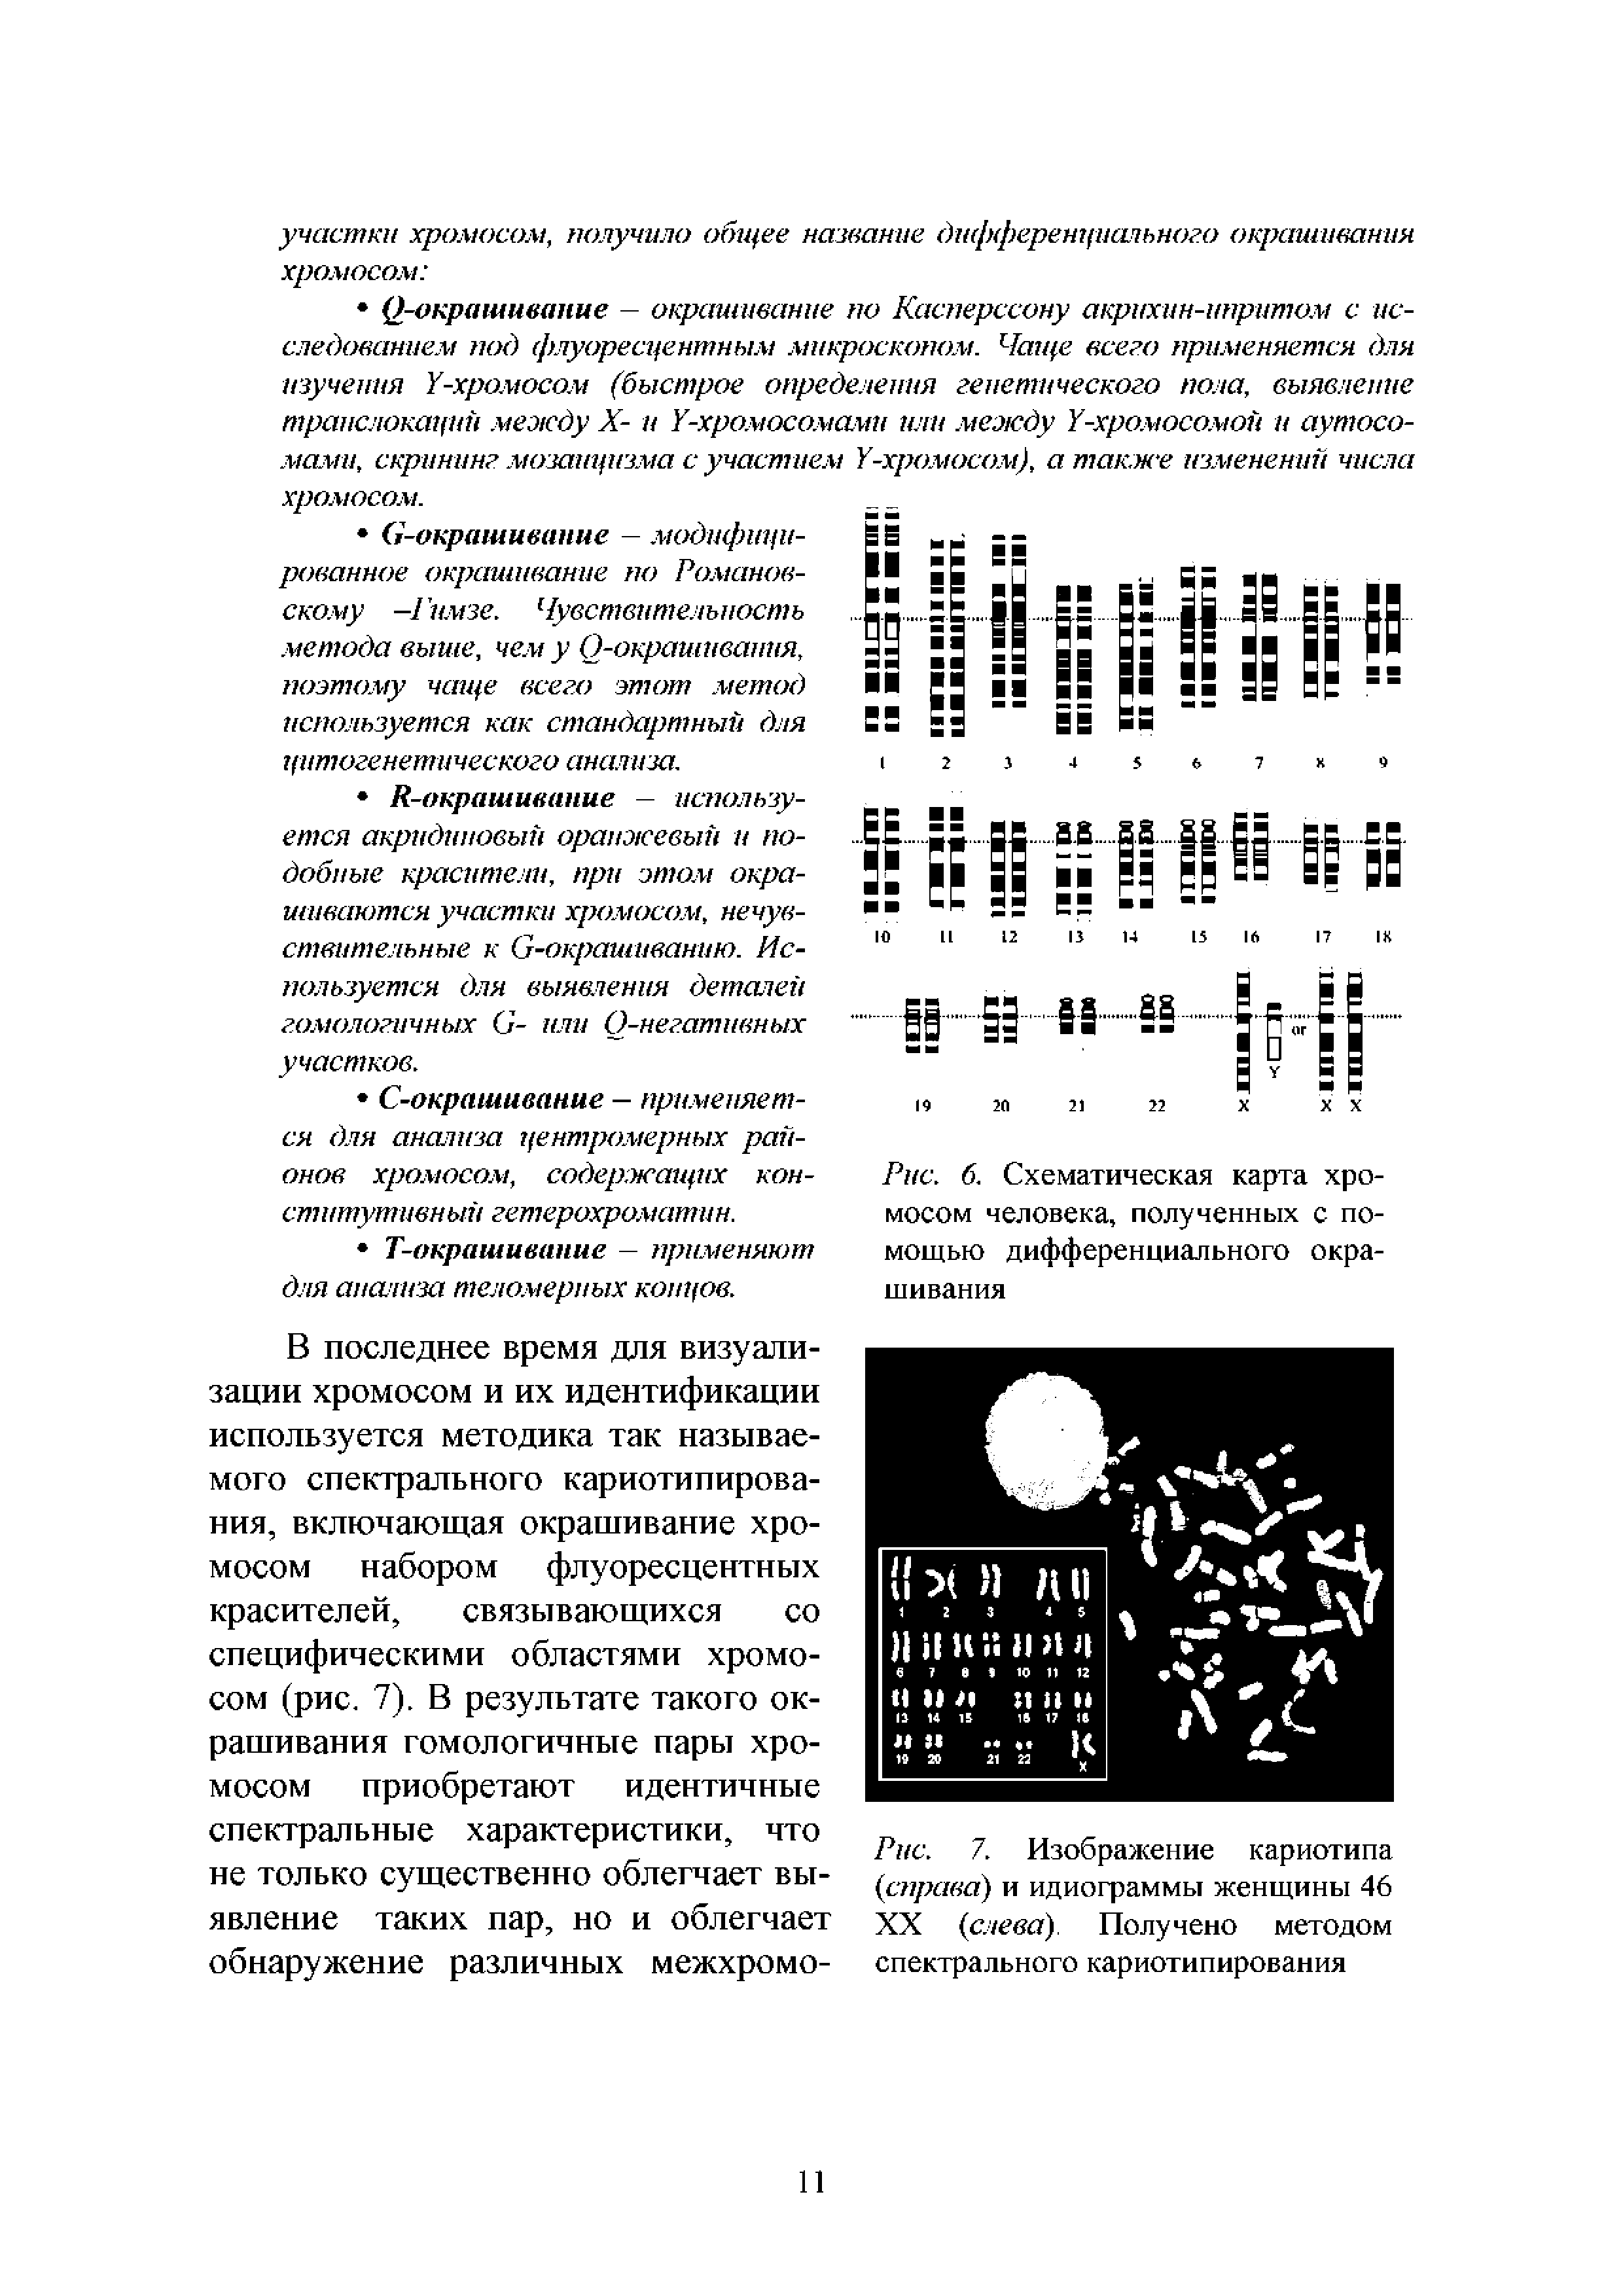 Рис. 7. Изображение кариотипа (справа) и идиограммы женщины 46 XX (слева). Получено методом спектрального кариотипирования...